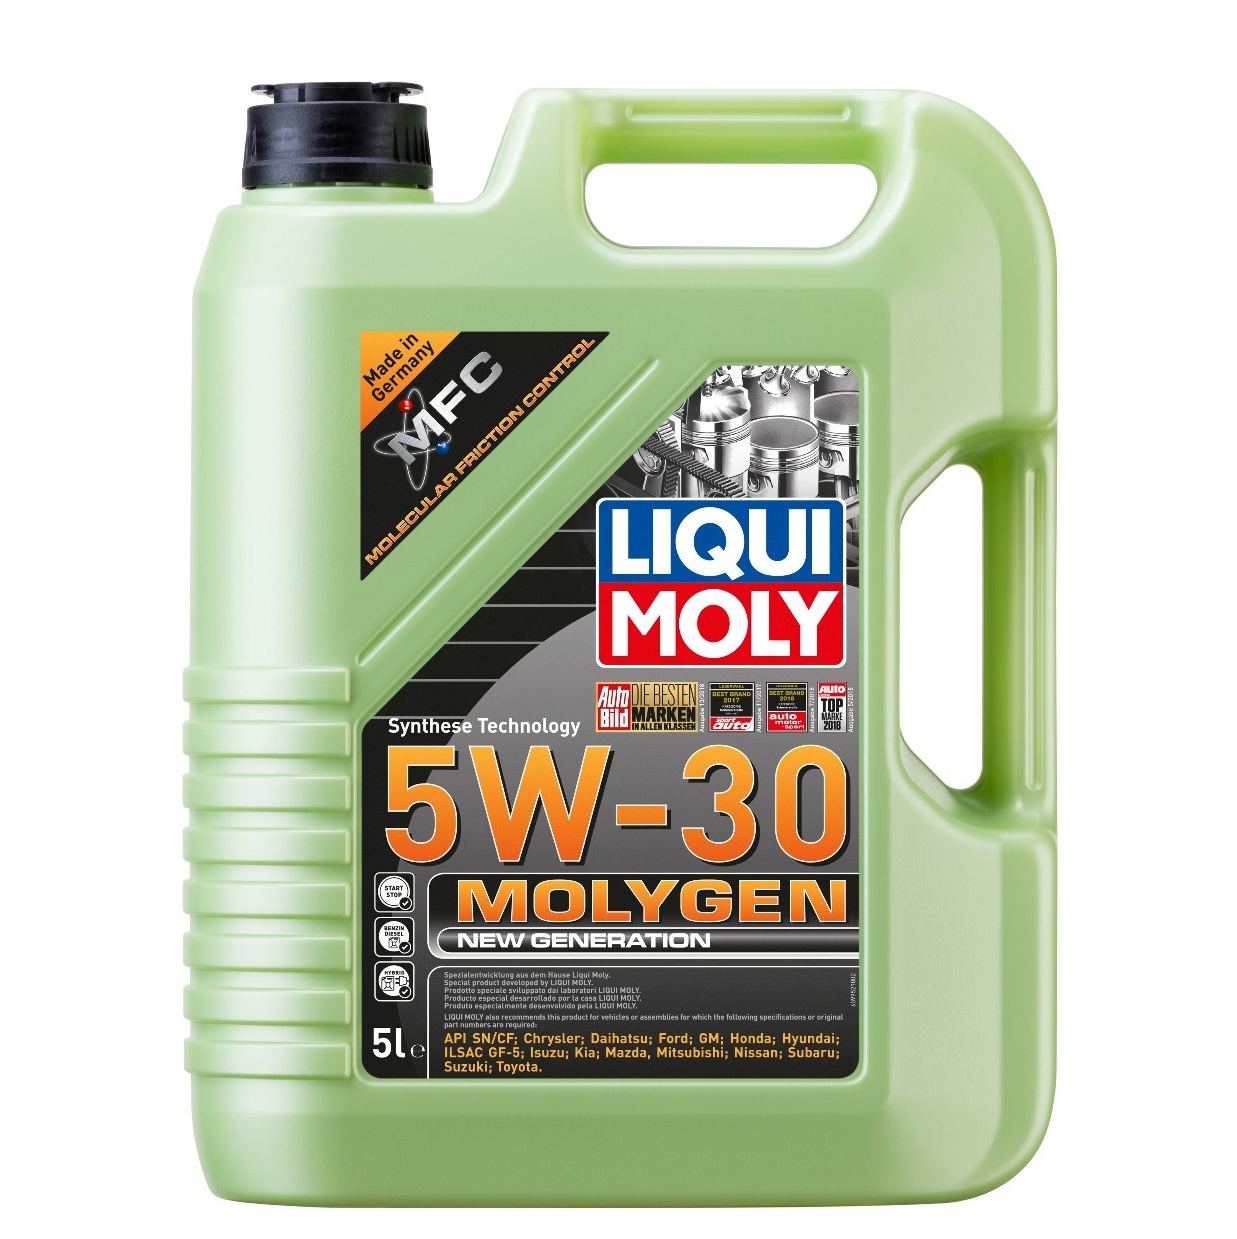 Liqui Moly Molygen 5W-30 (9952) / 5 L